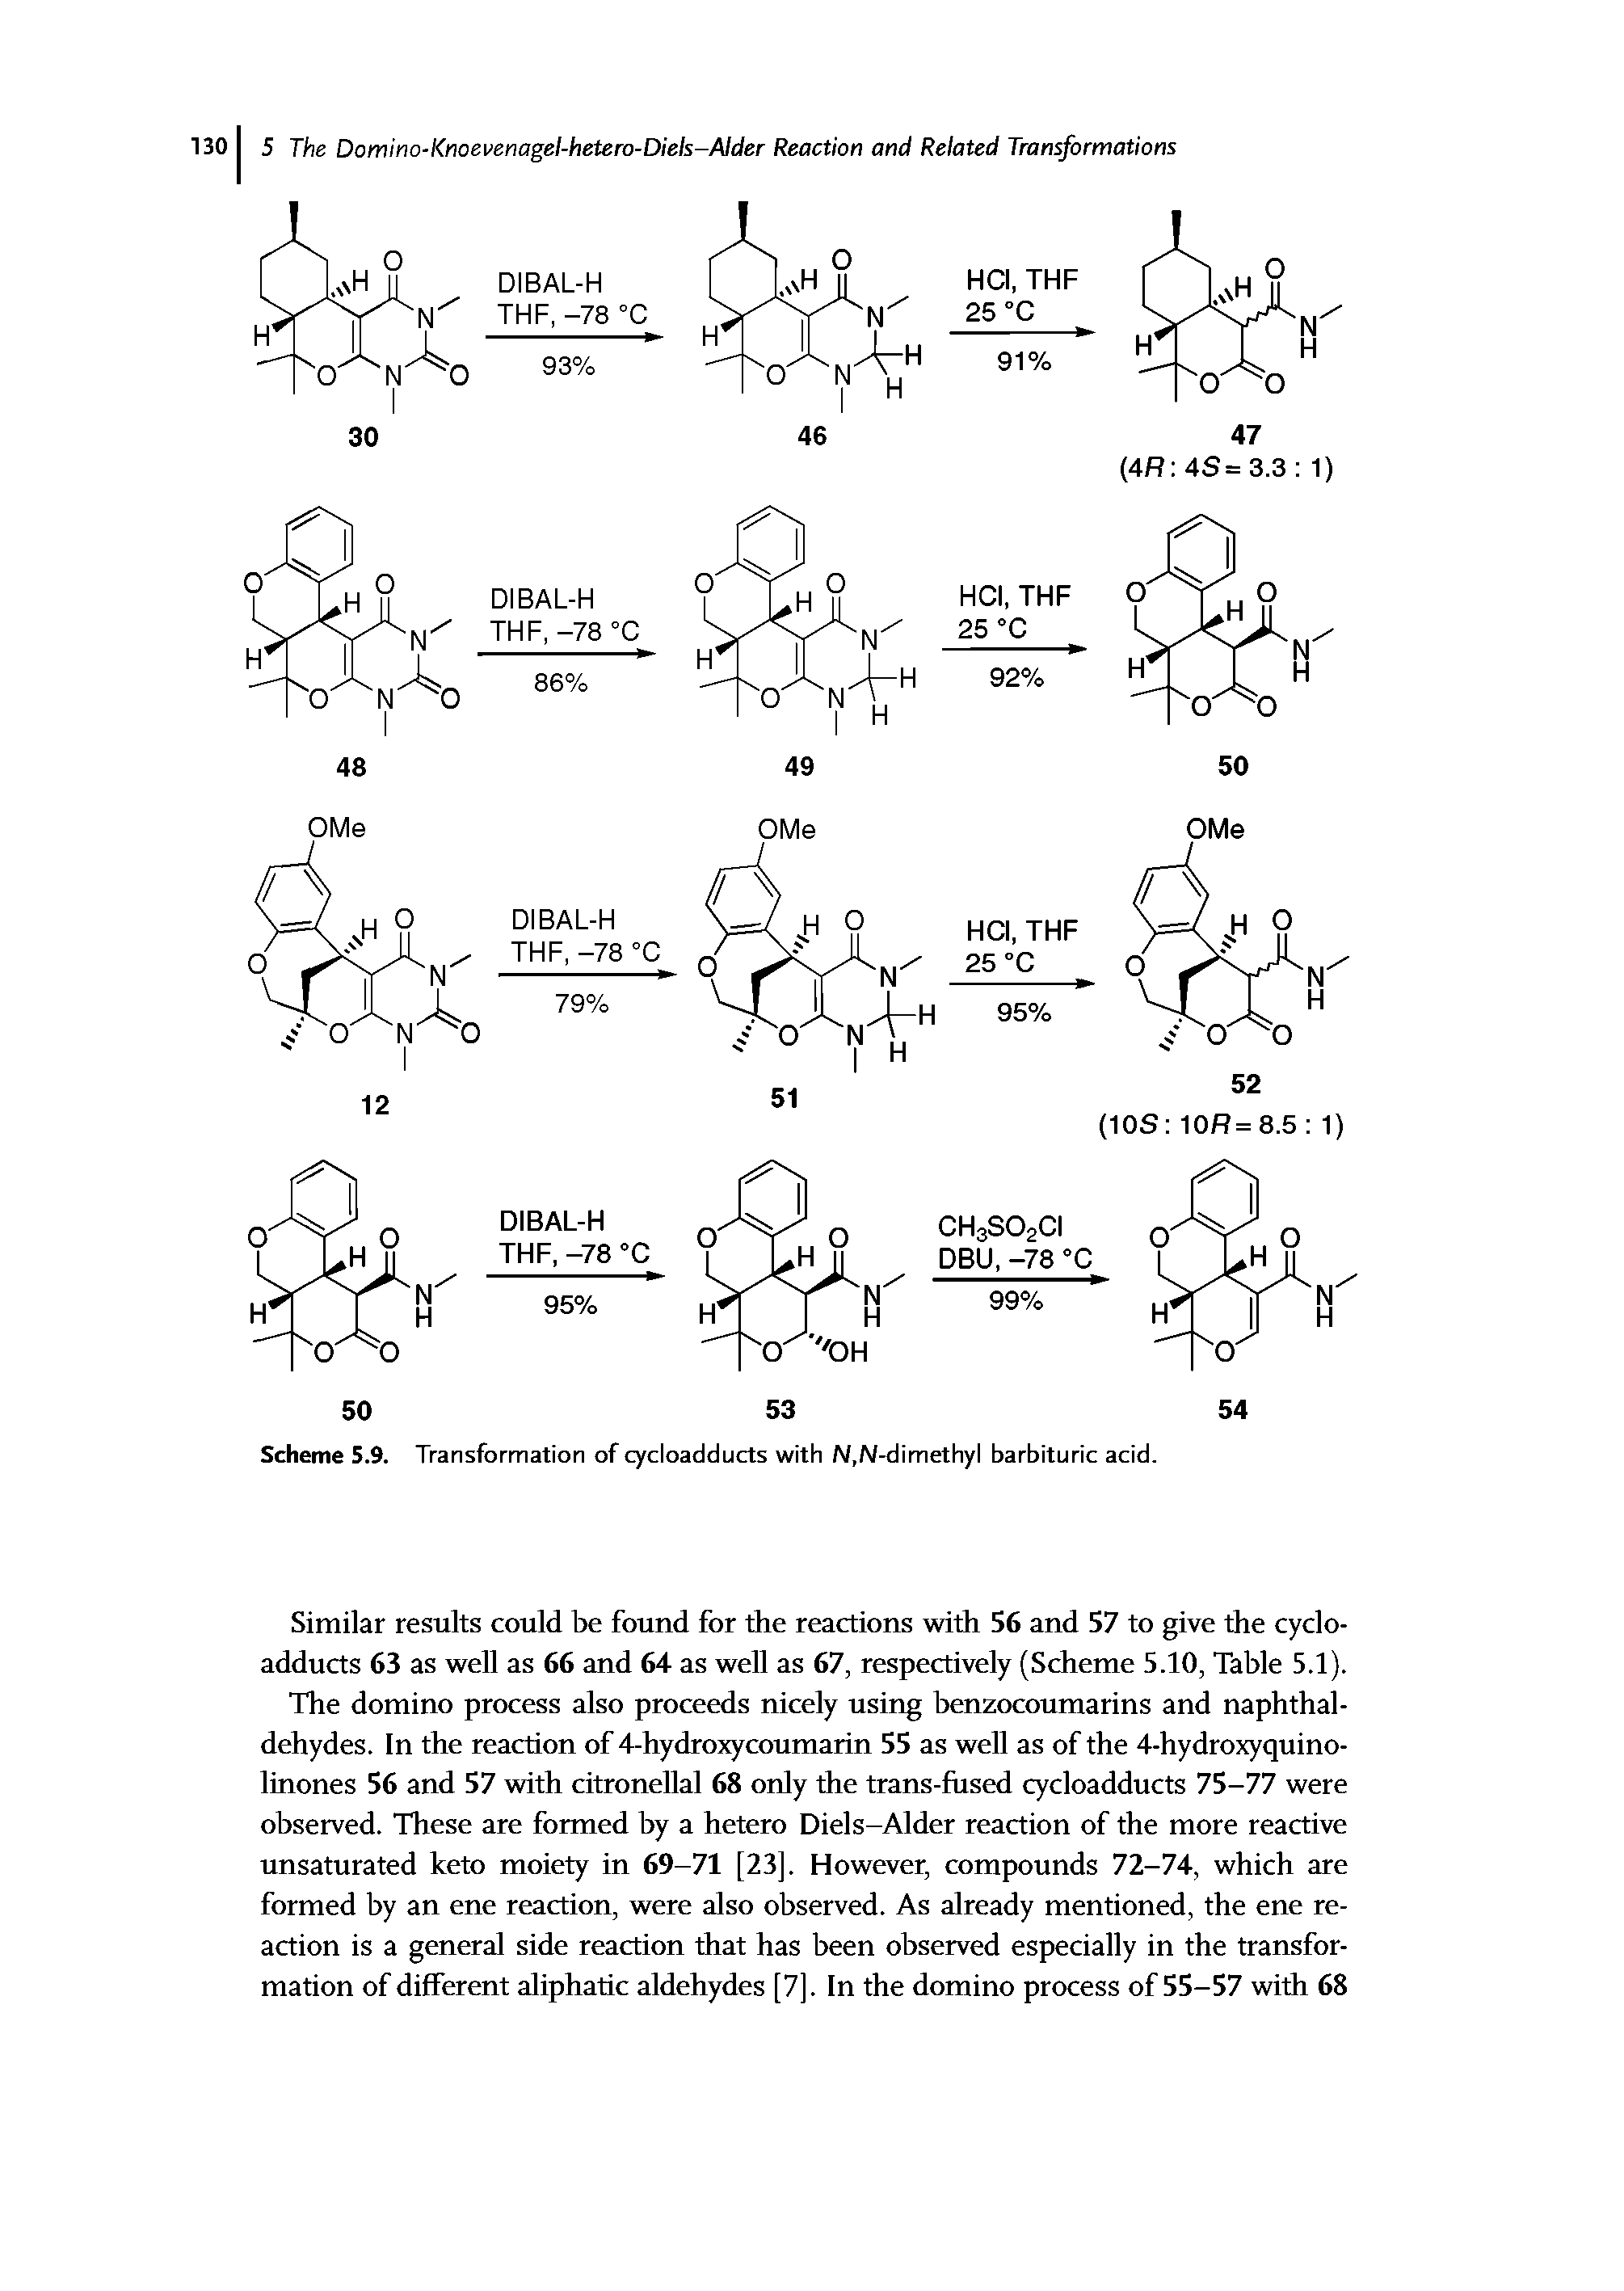 Scheme 5.9. Transformation of cycloadducts with N,N-dimethyl barbituric acid.